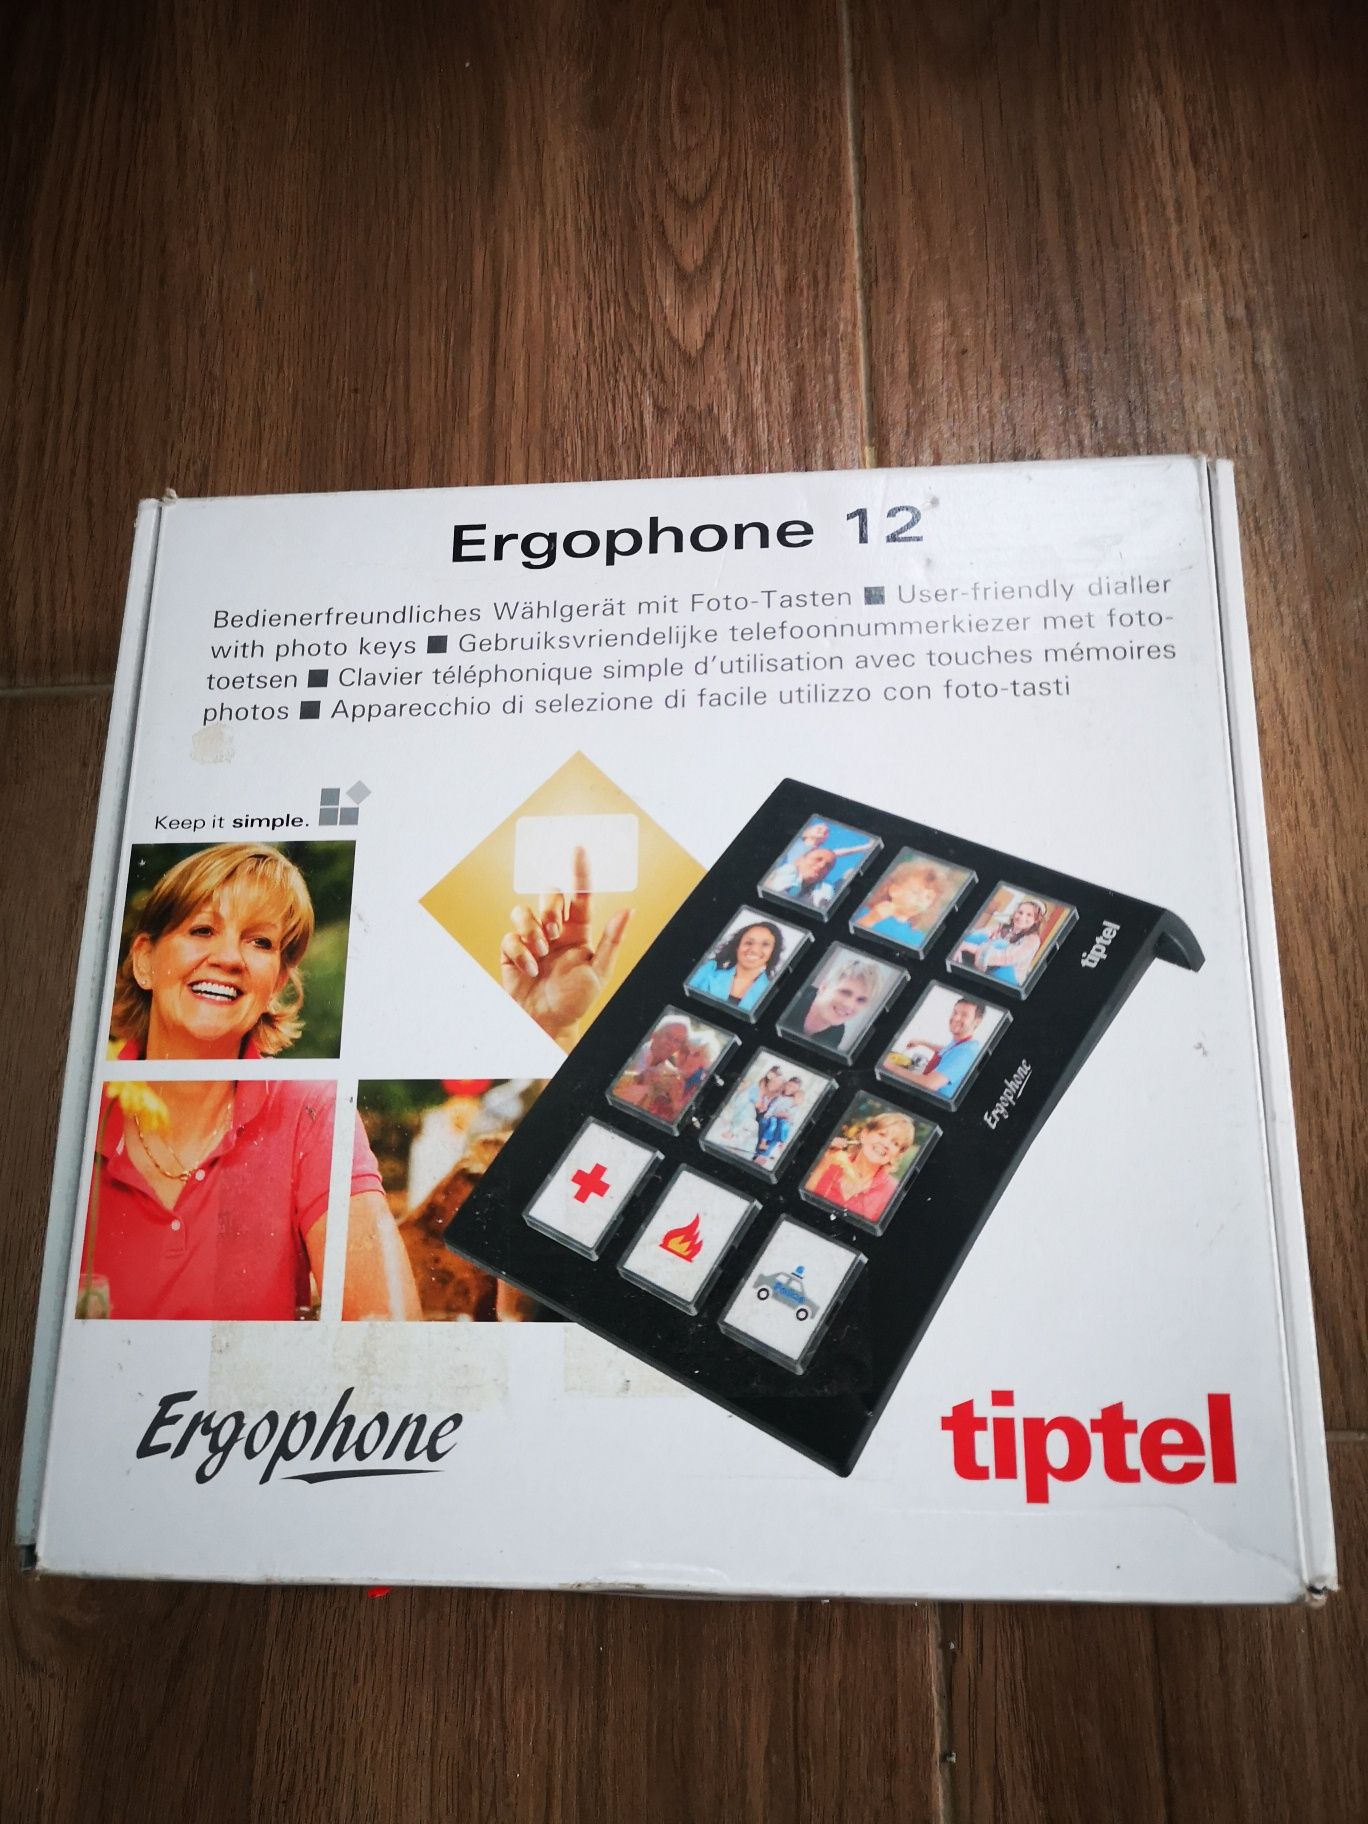 Telefon seniori, butoane mari cu poze Ergophone 12